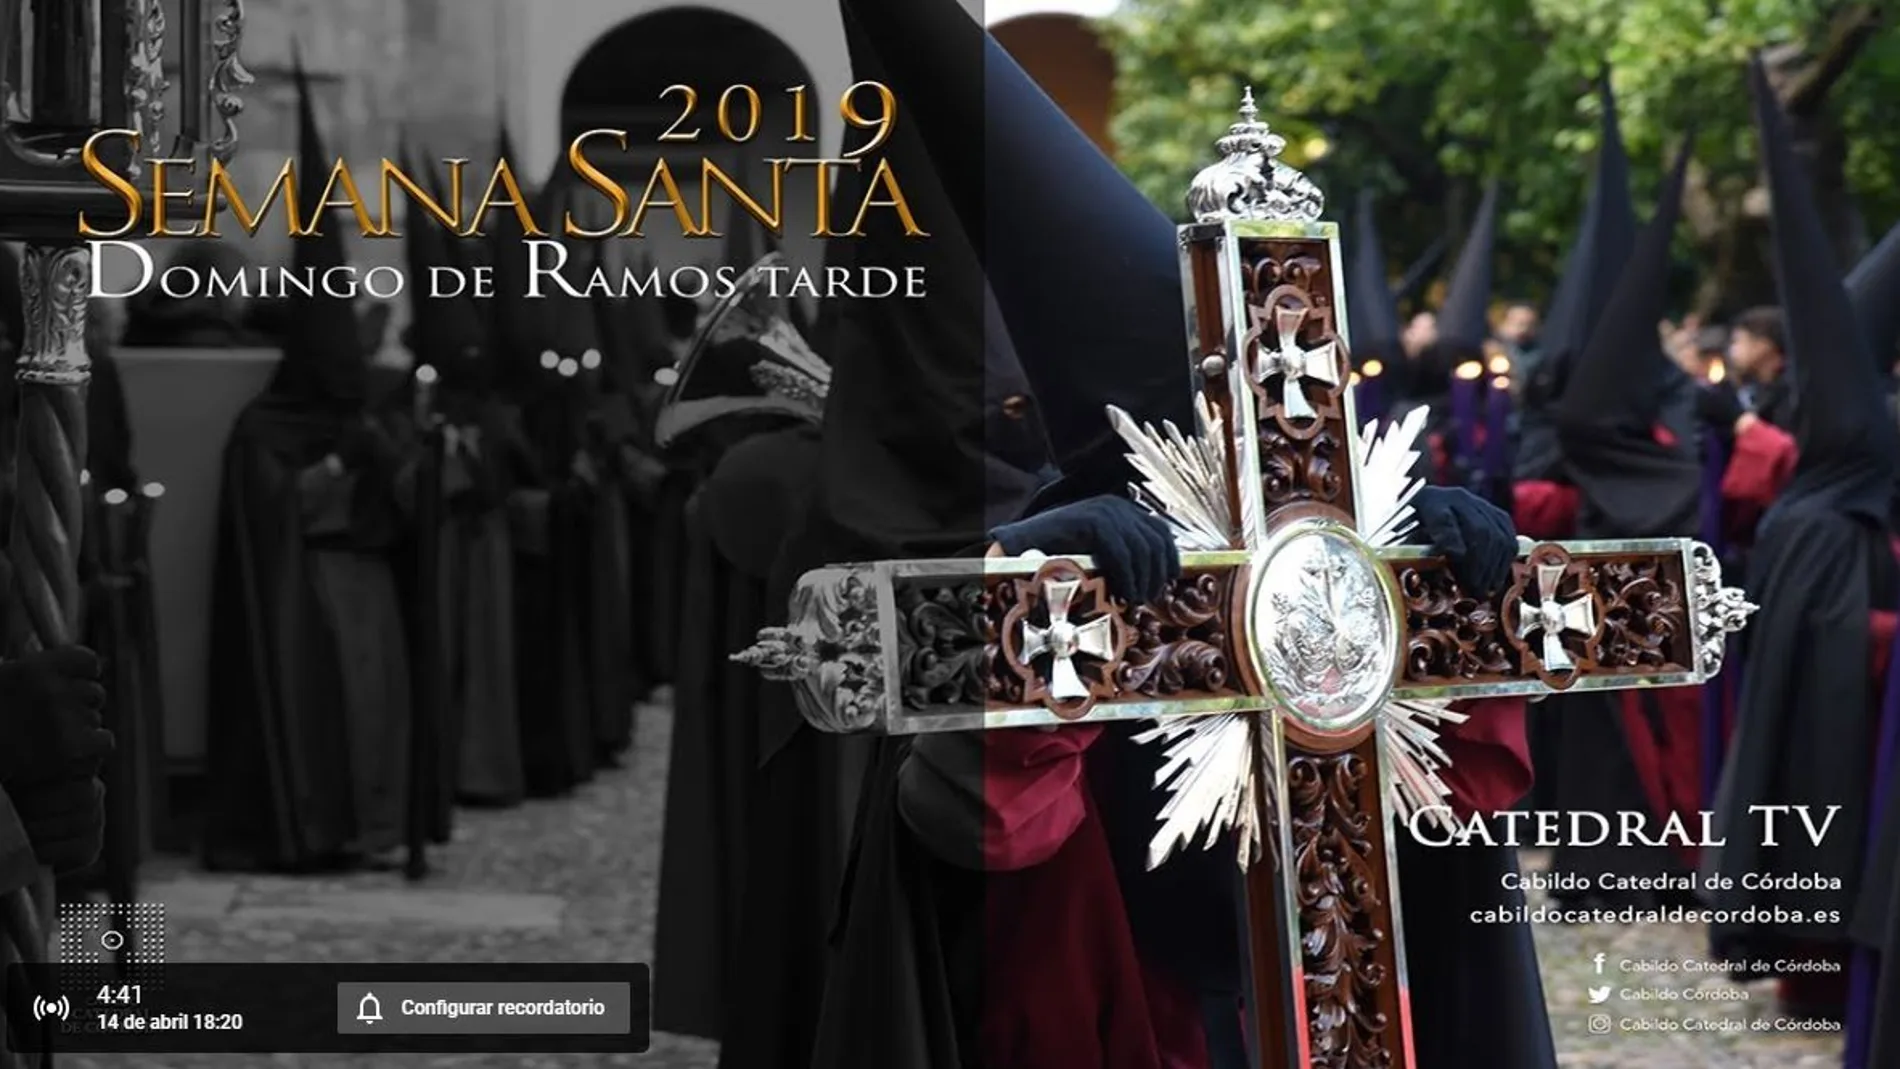 En directo en LA RAZÓN, la misa de Domingo de Ramos desde la Catedral de Córdoba